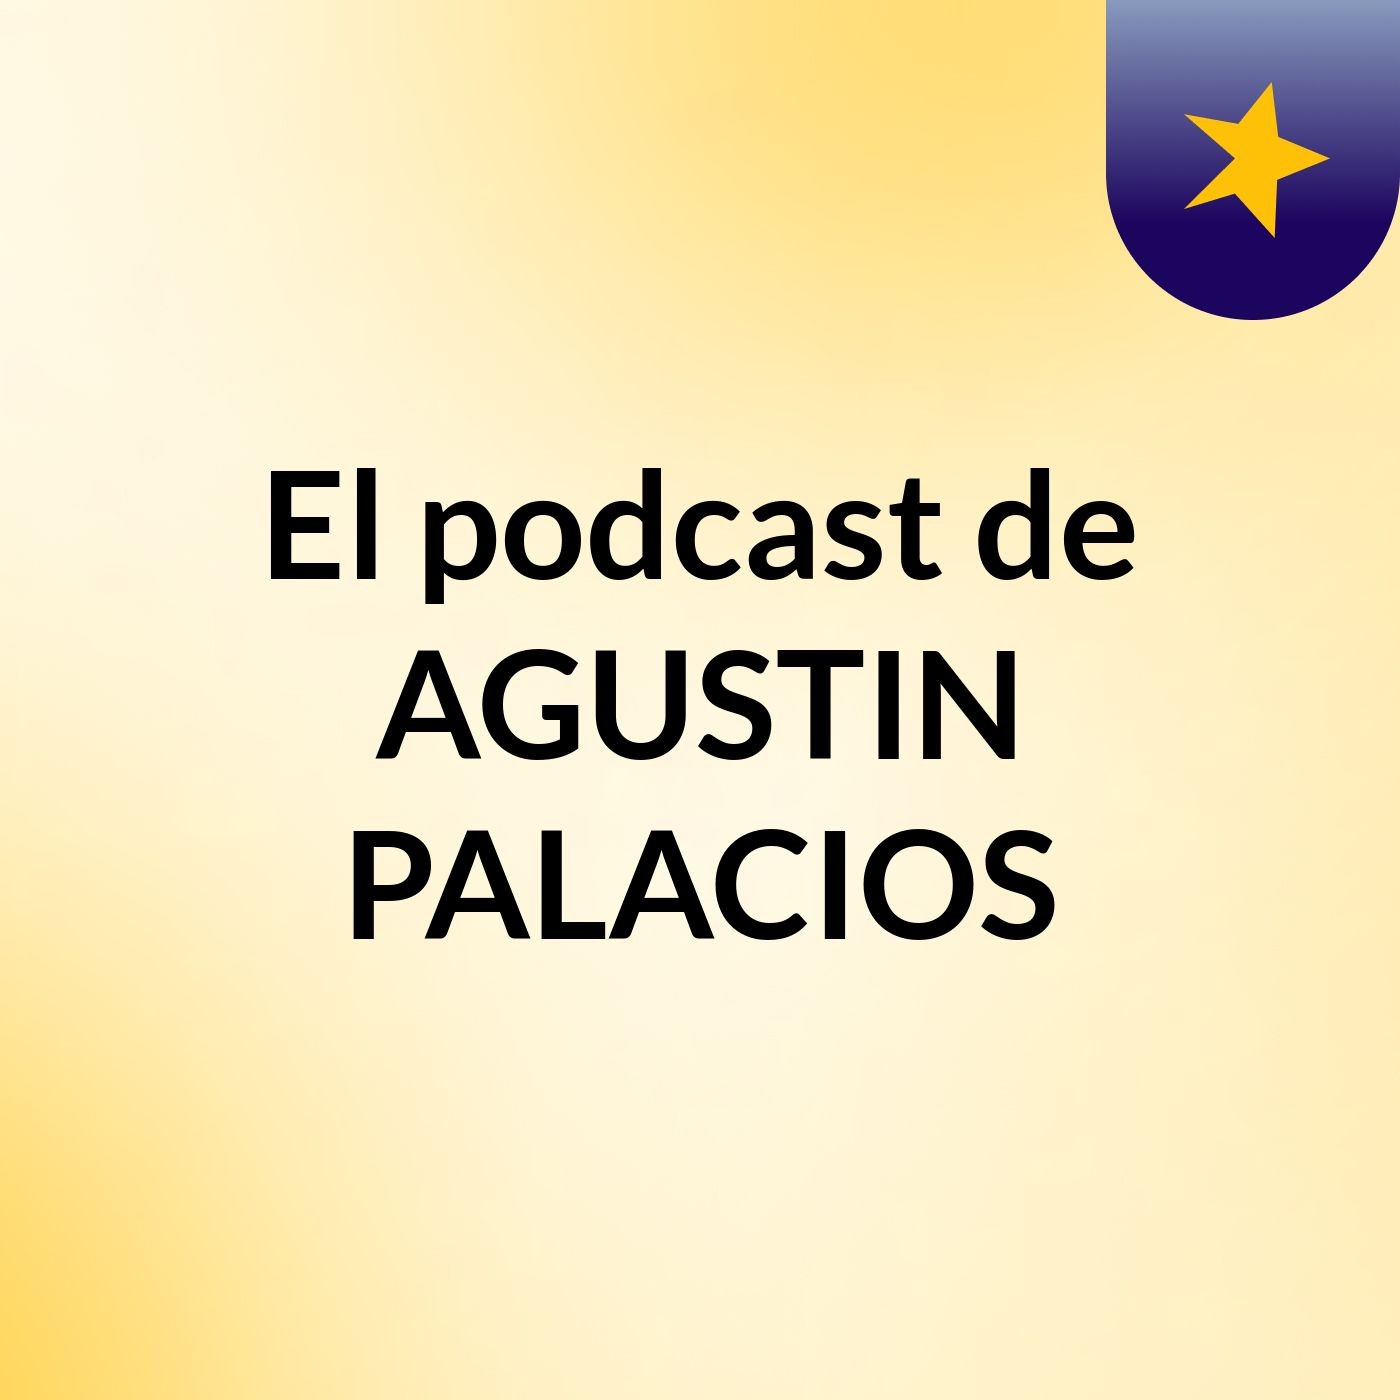 El podcast de AGUSTIN PALACIOS